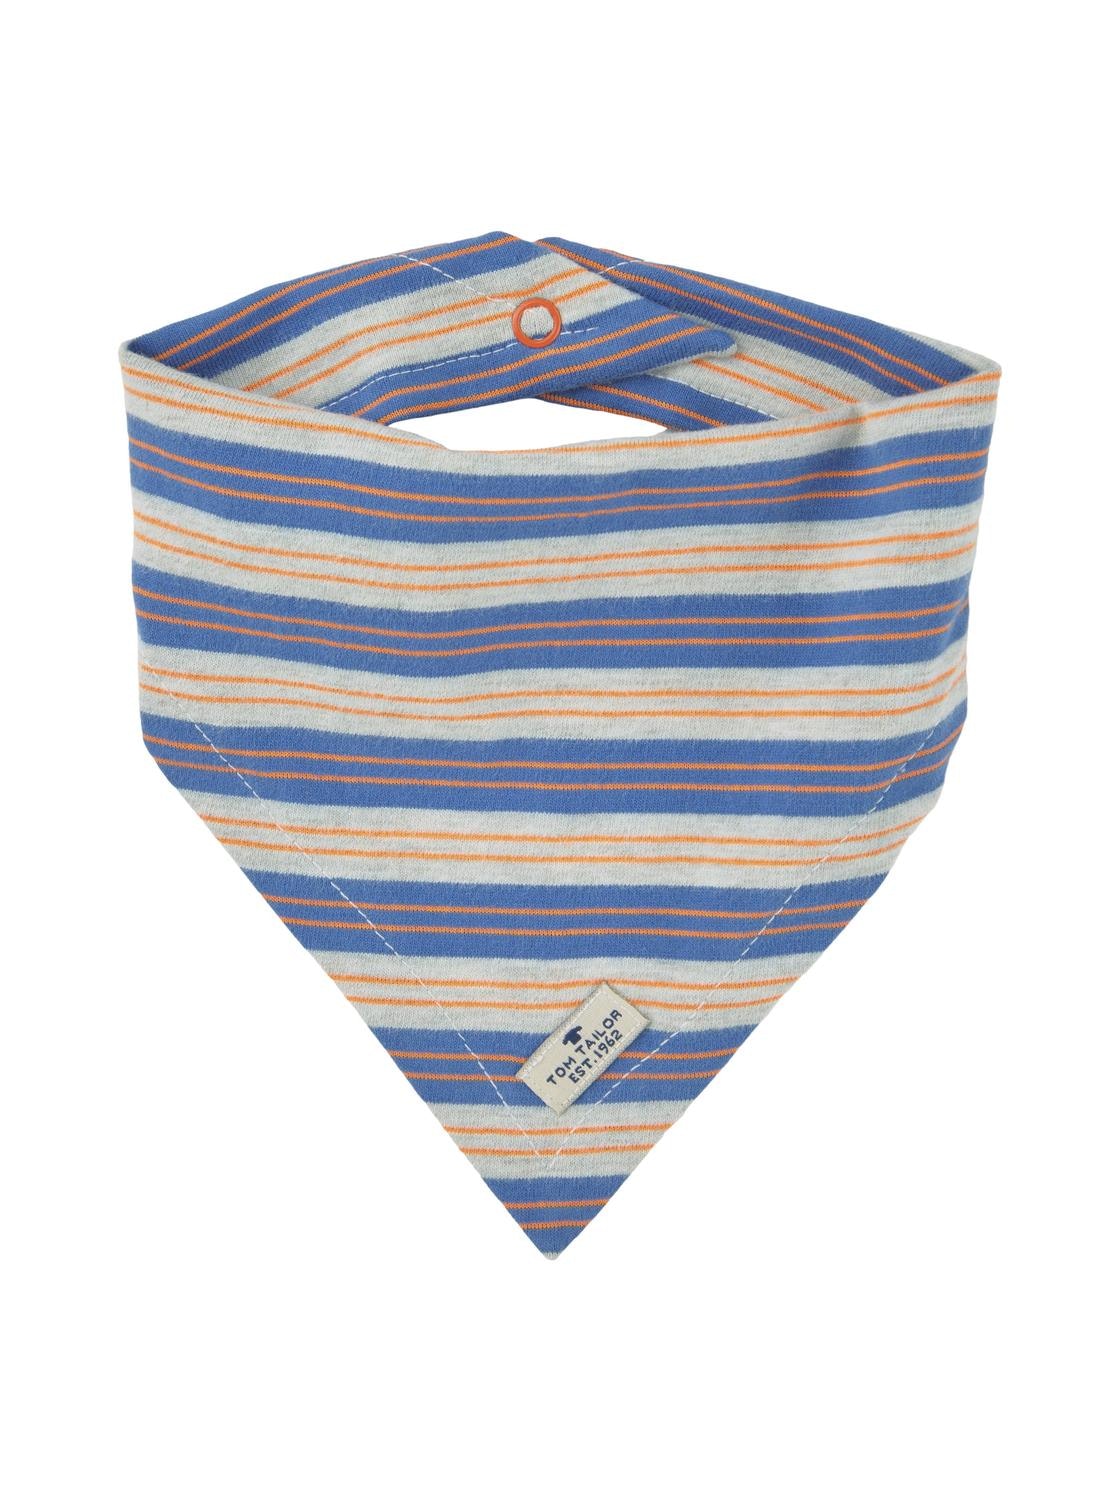 bandana, y/d stripe-multicolored